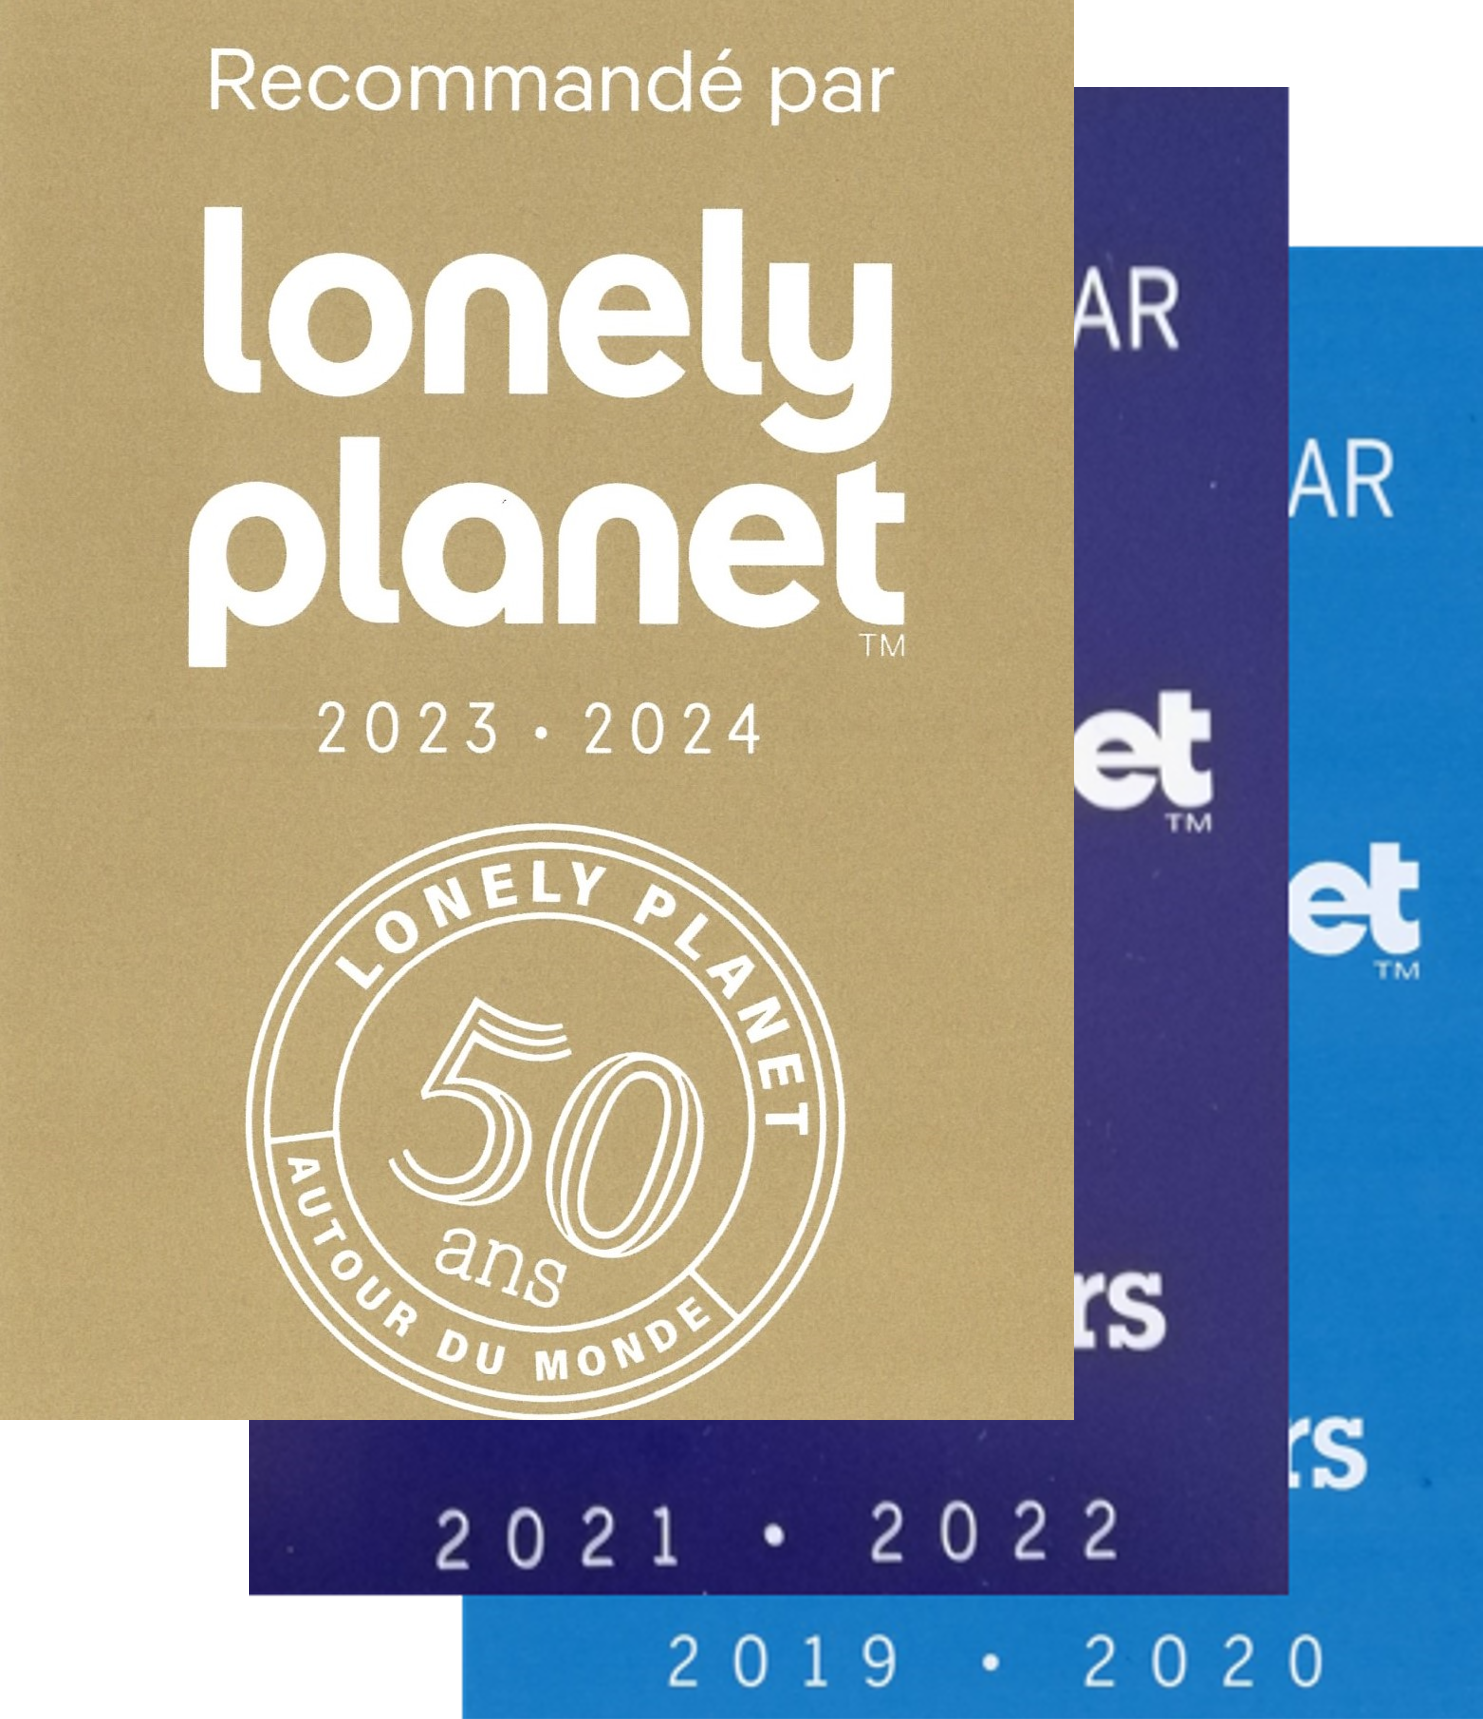 Recommandé par le Lonely Planet